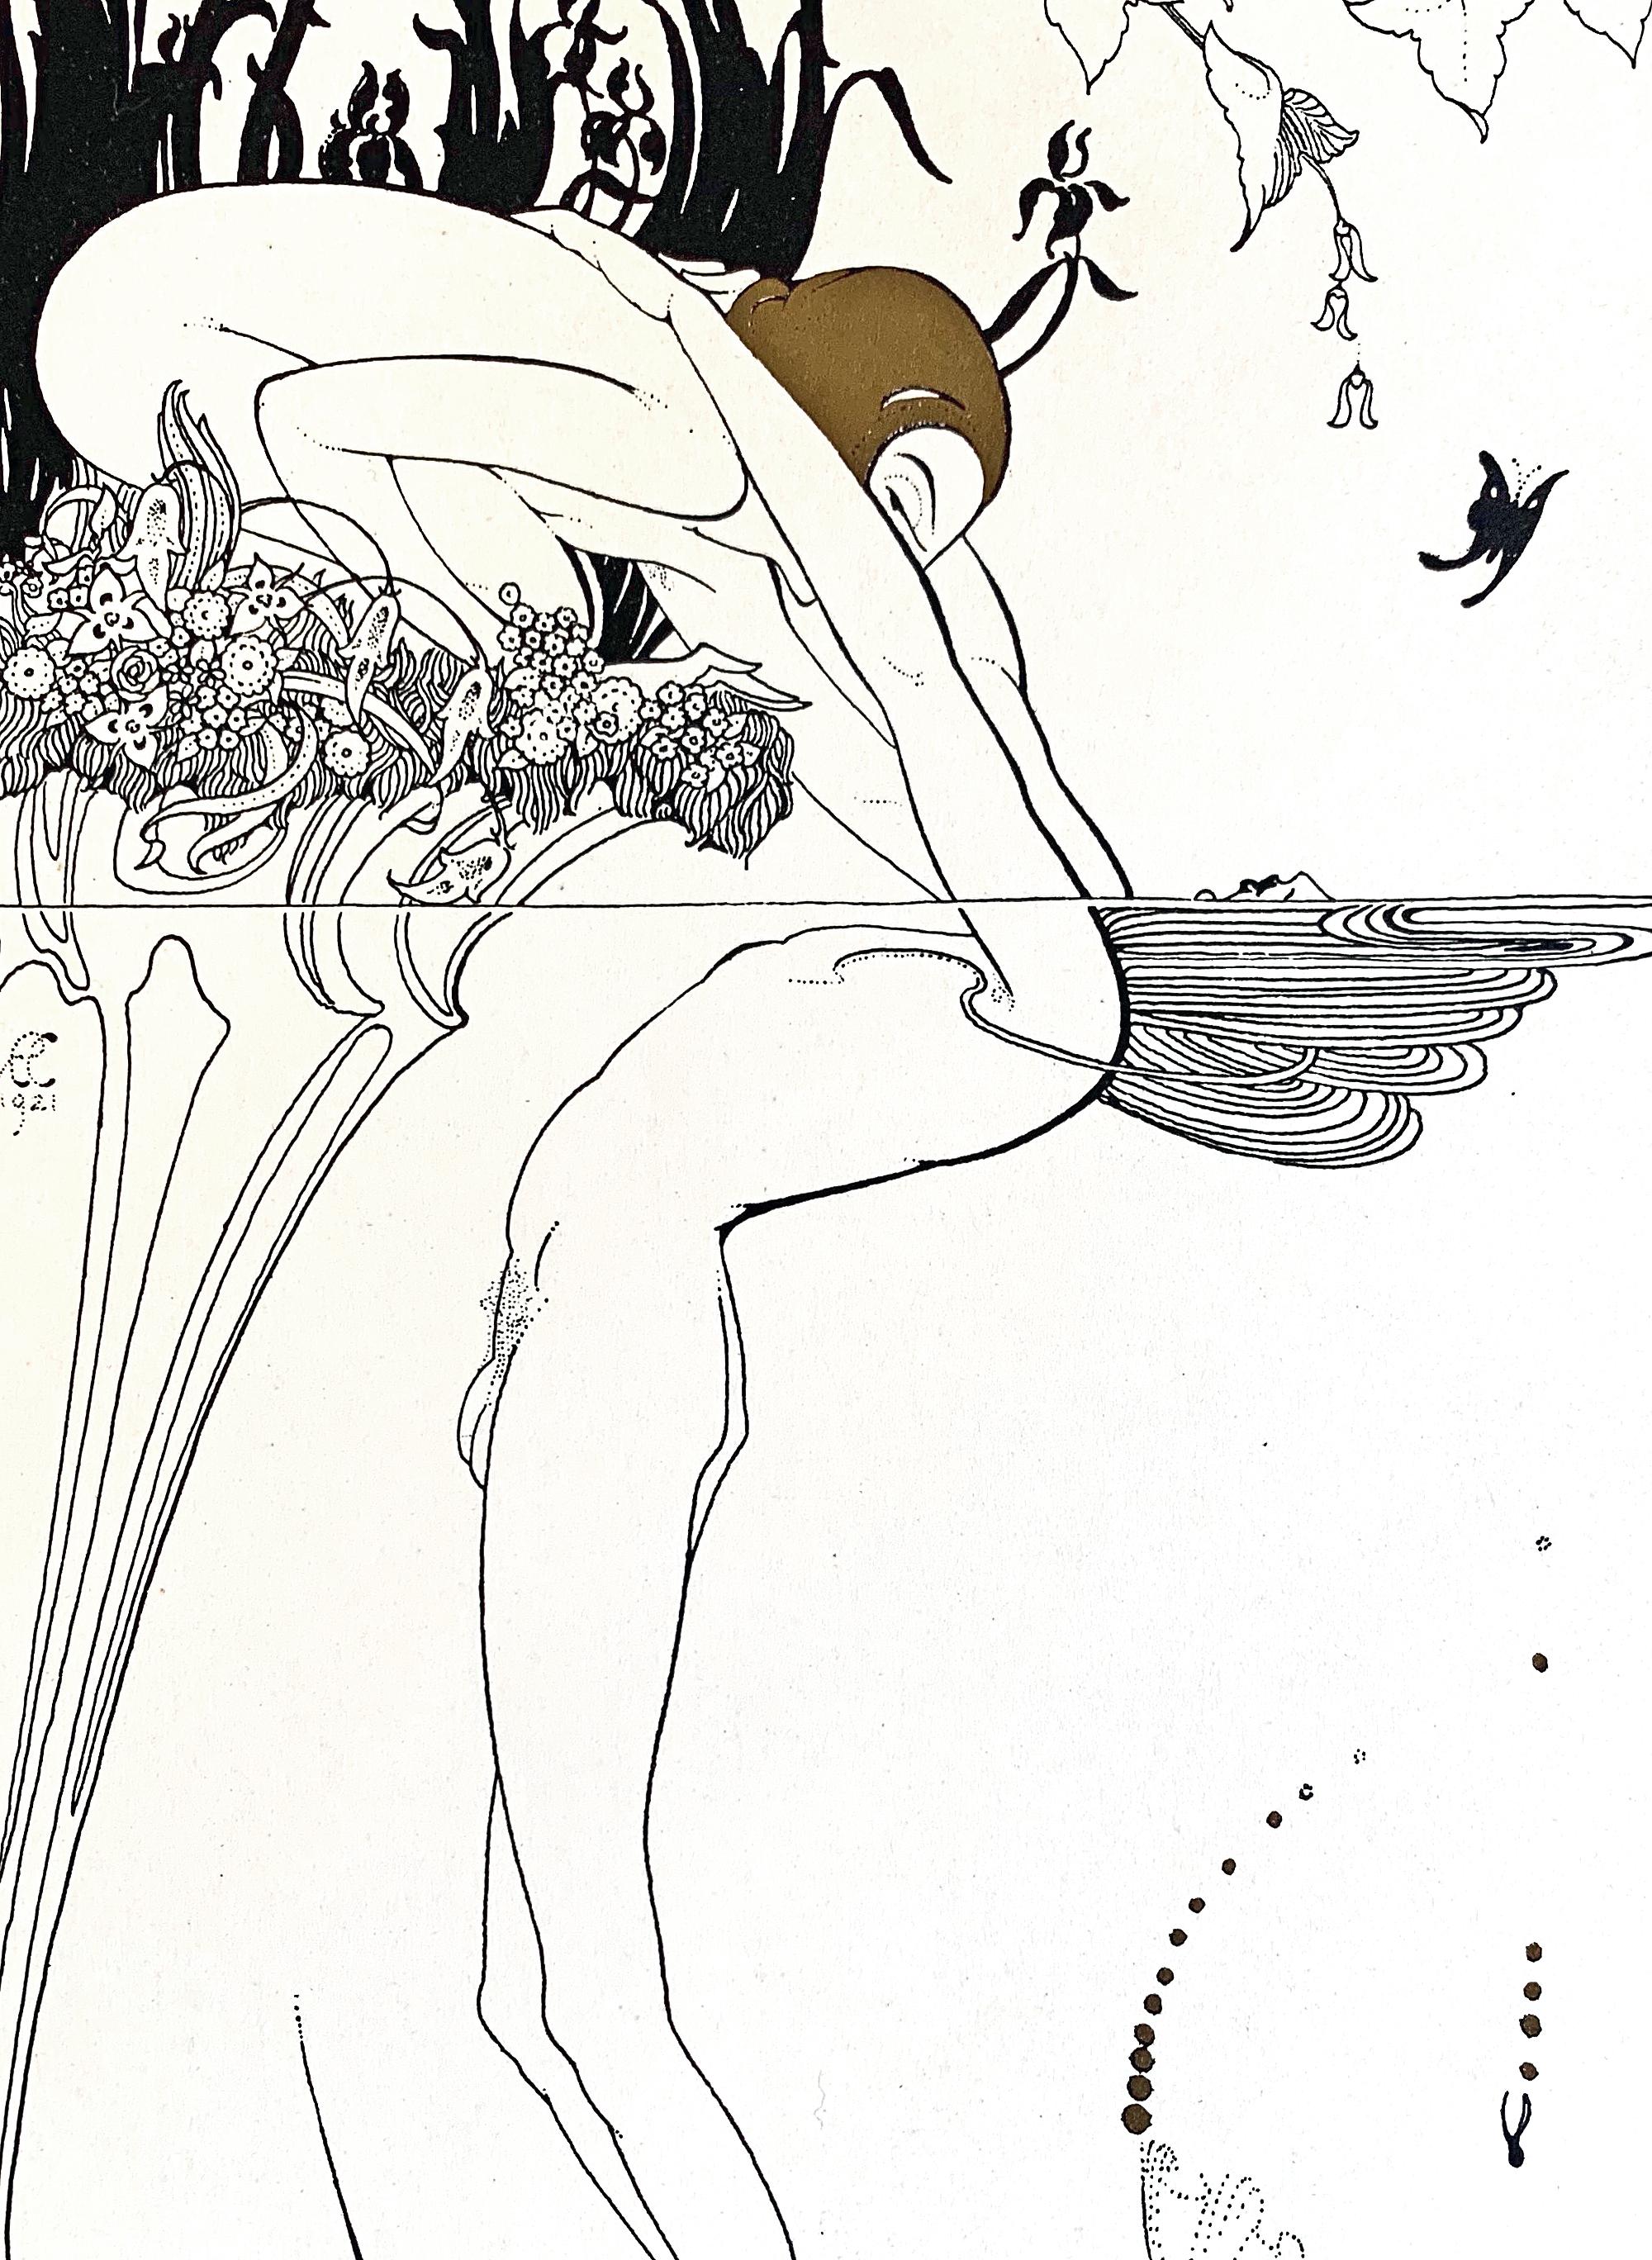 Cet ensemble remarquable de six estampes sensuelles, rehaussées d'encre dorée et argentée, a été publié et relié par John Henry Nash en 1926 pour honorer la vie de son collaborateur fréquent, Ray Frederick Coyle. Coyle étant décédé prématurément,